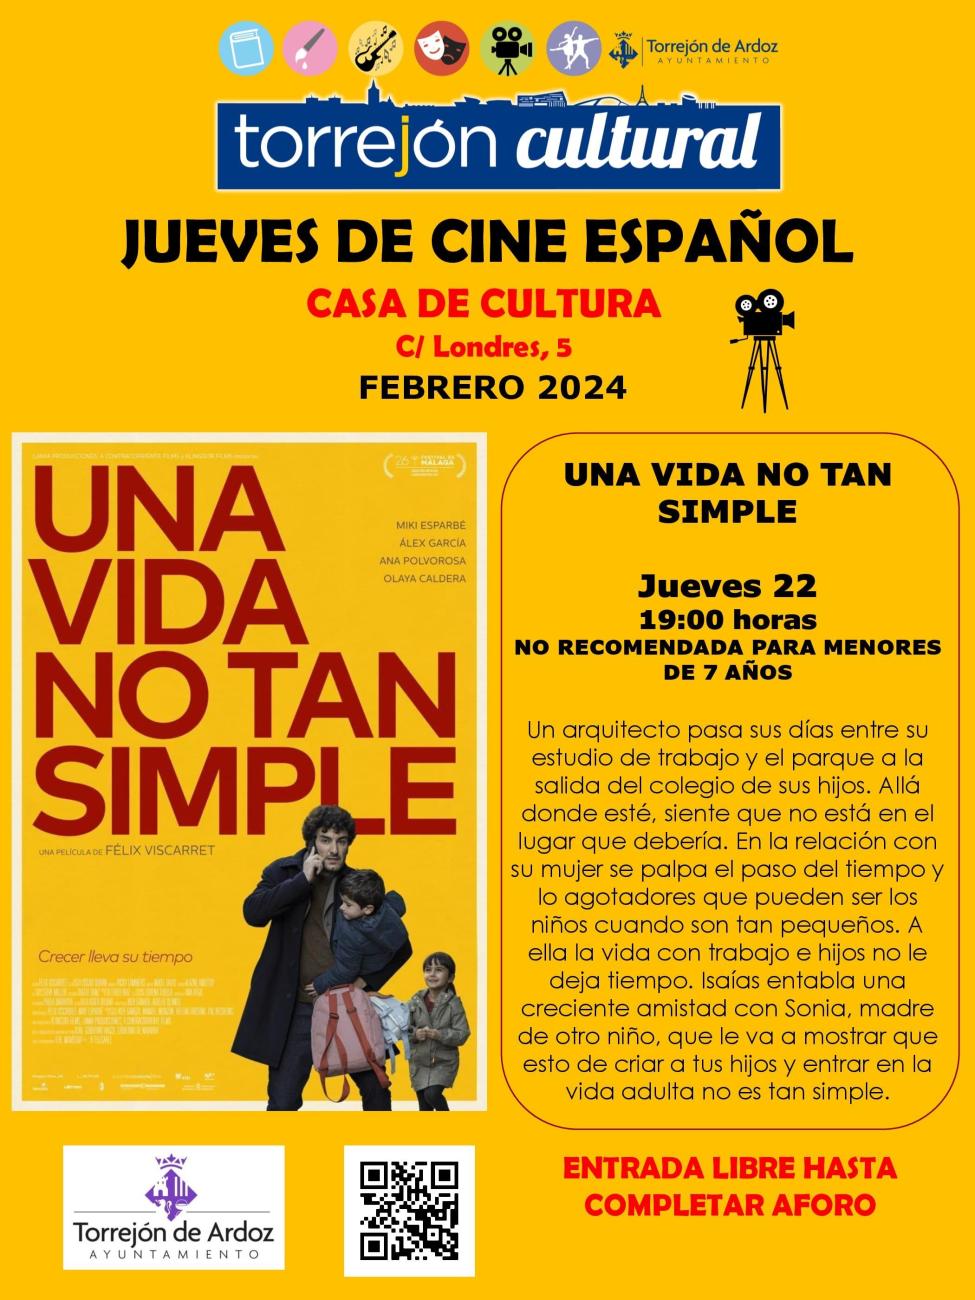 Jueves de cine español: Una vida no tan simple